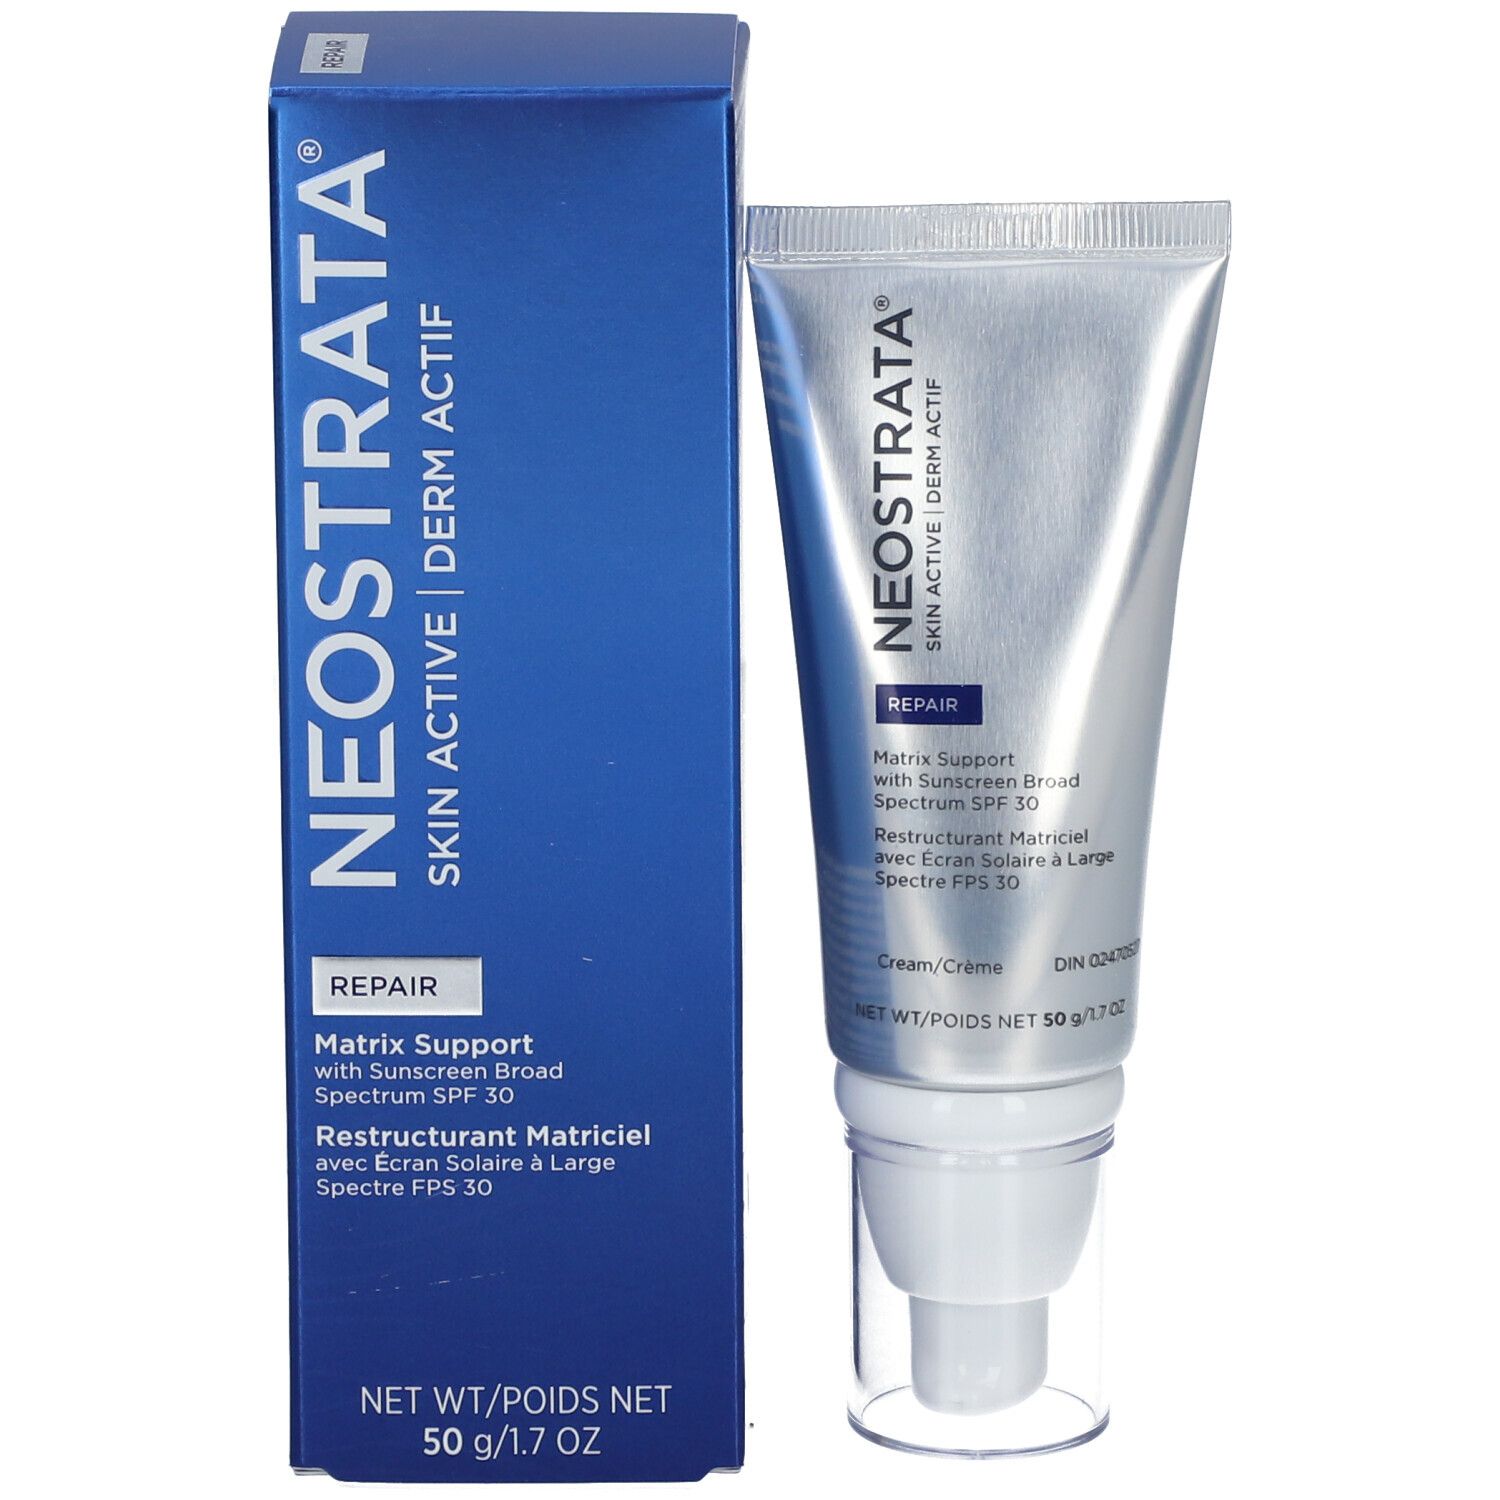 NeoStrata® Skin Active Matrix Support SPF30